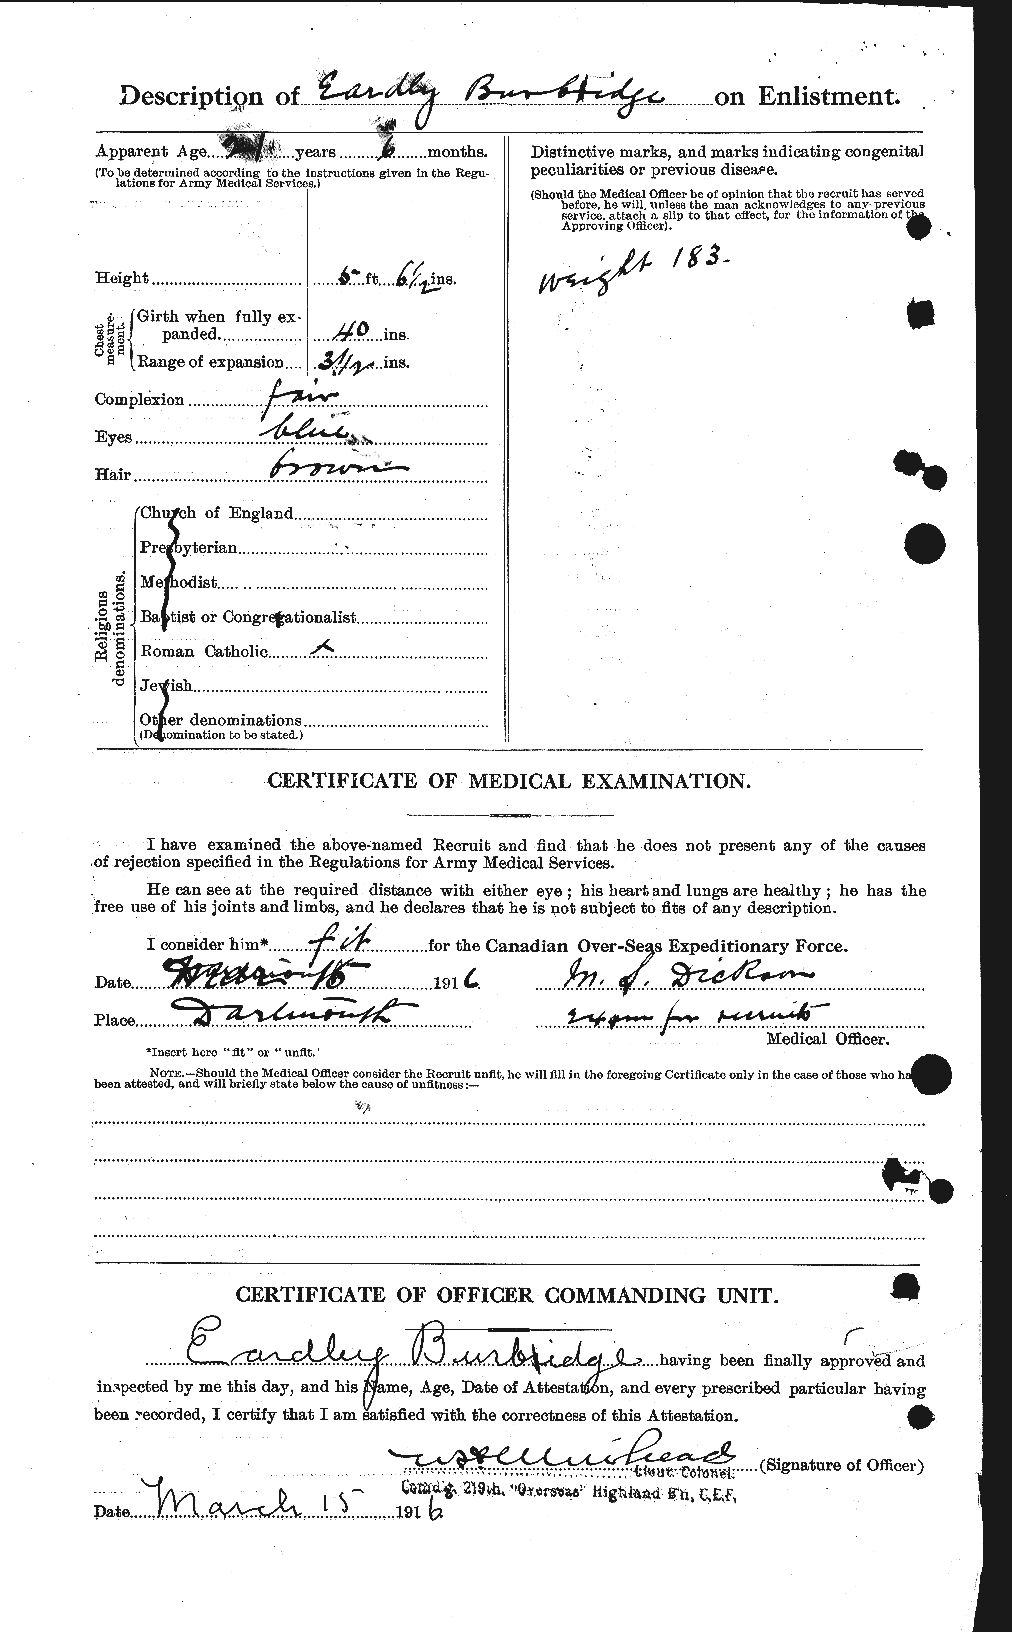 Dossiers du Personnel de la Première Guerre mondiale - CEC 271045b